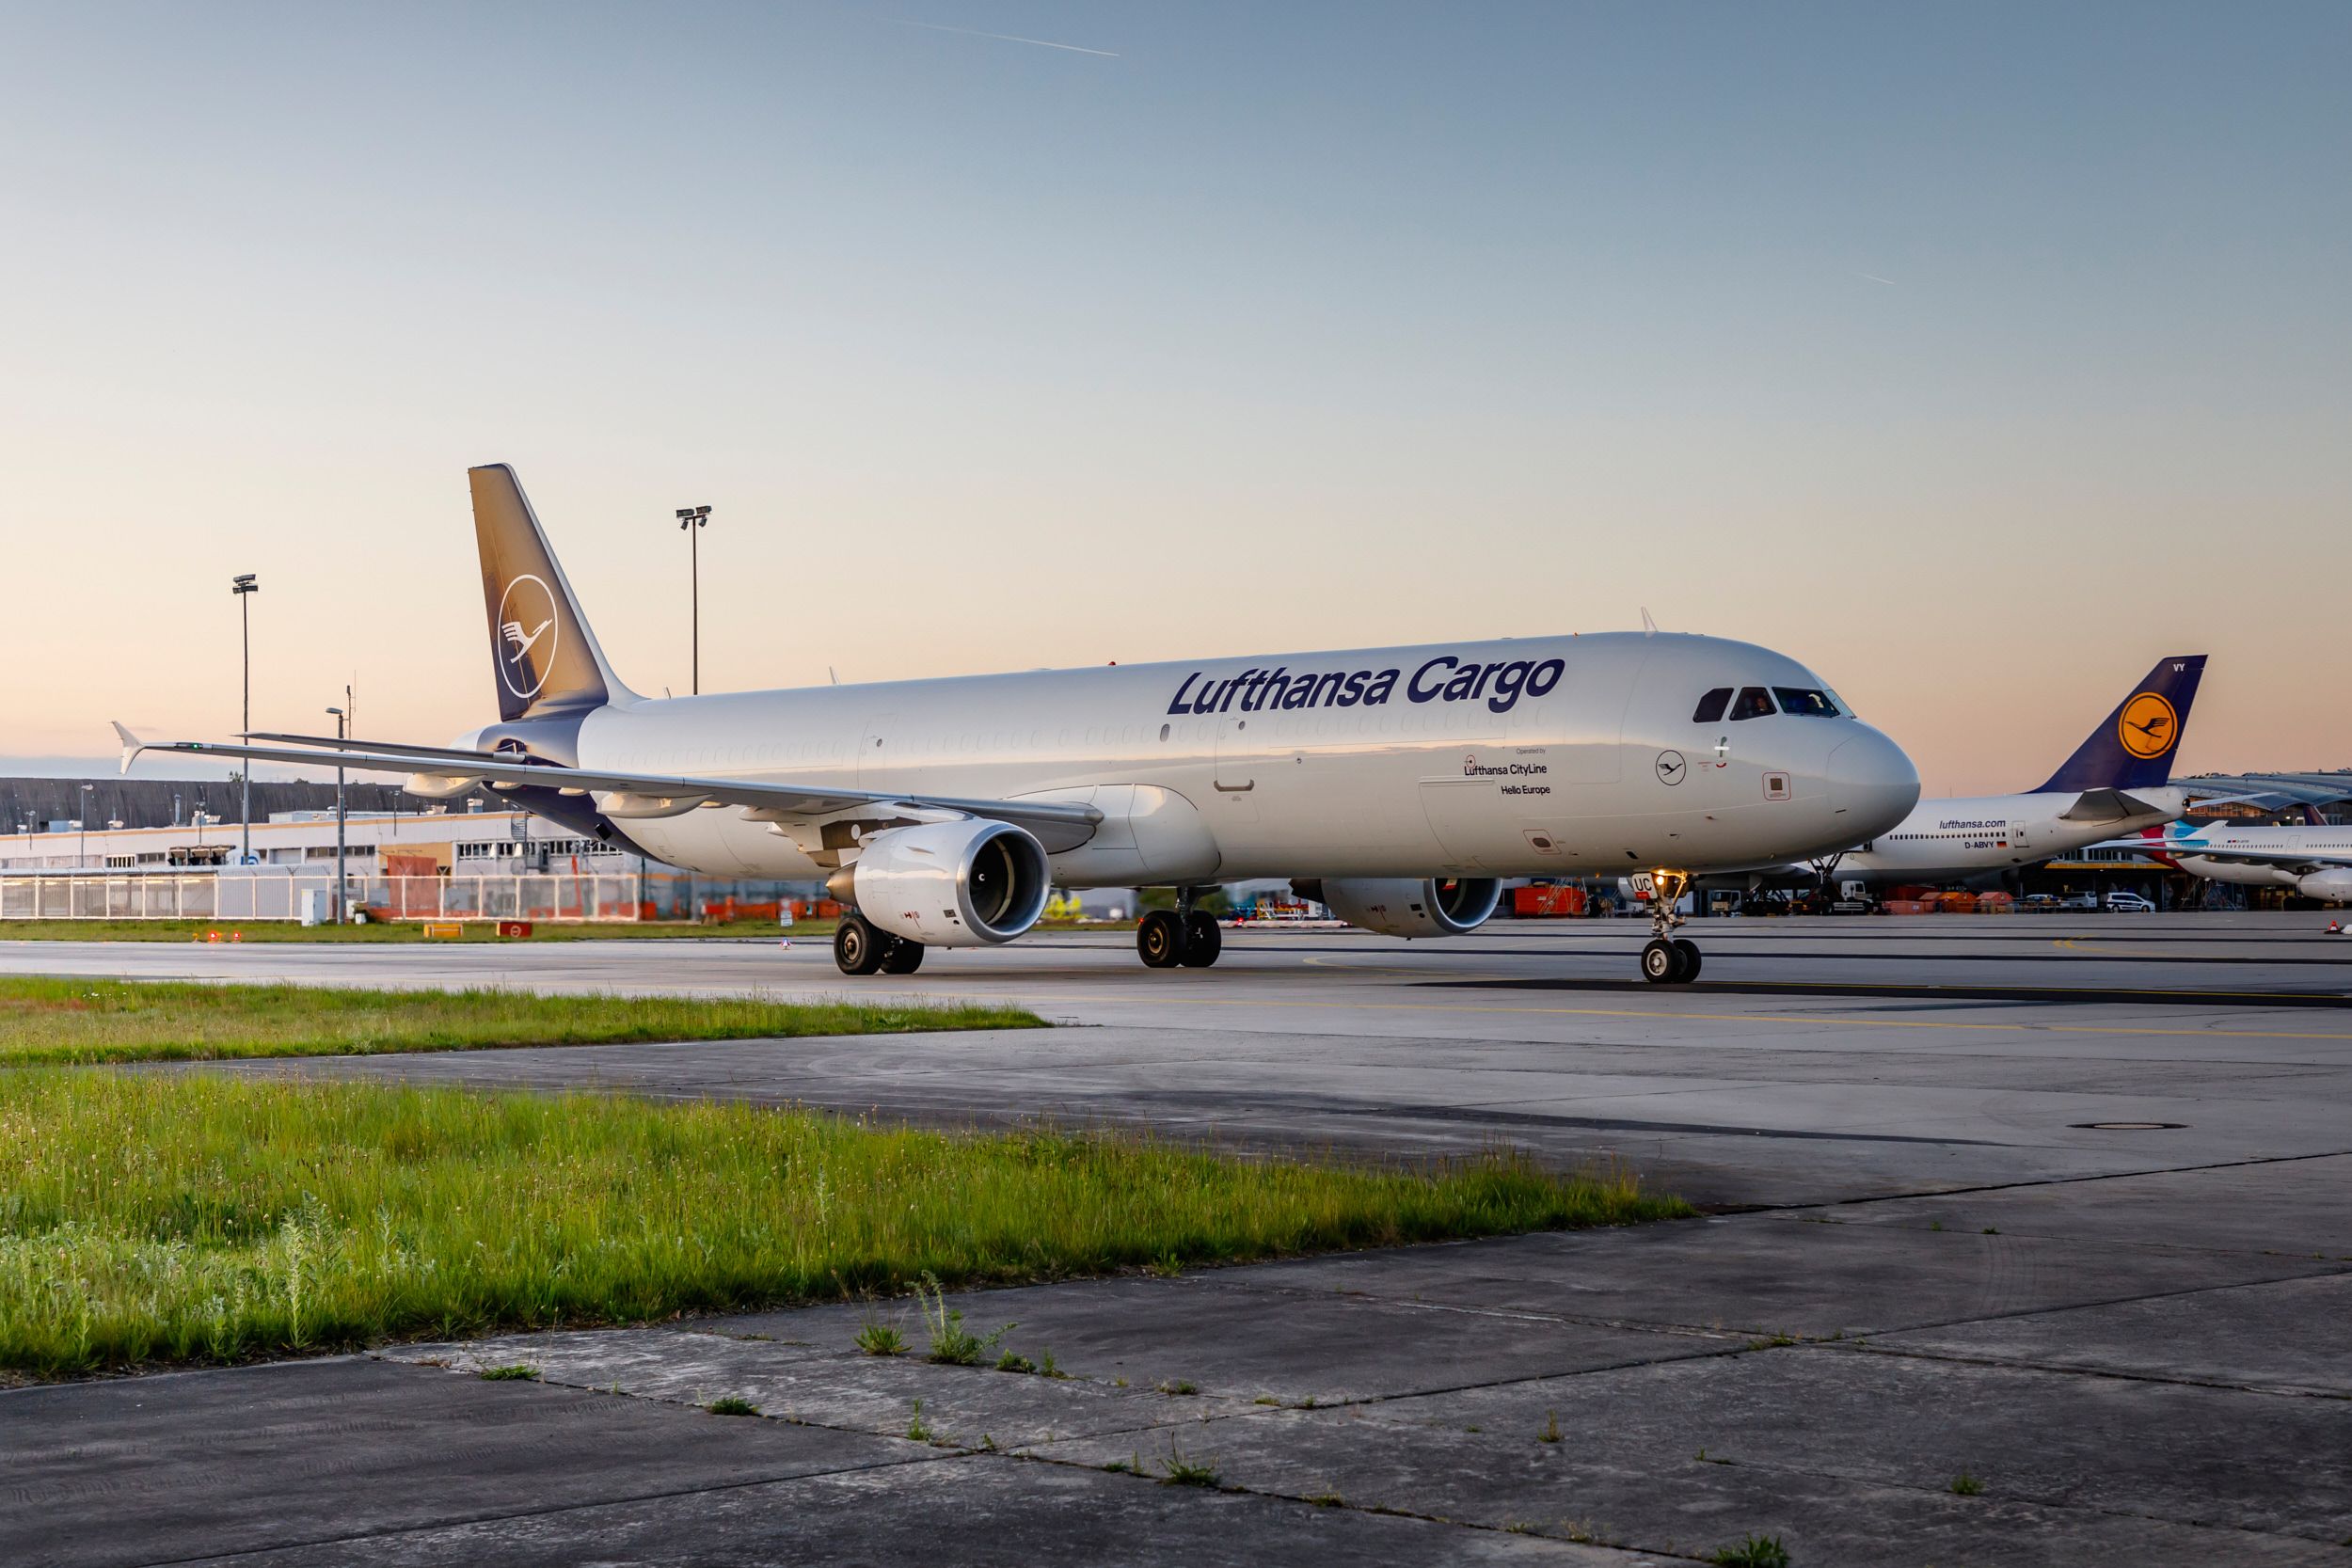 A Lufthansa Cargo plane